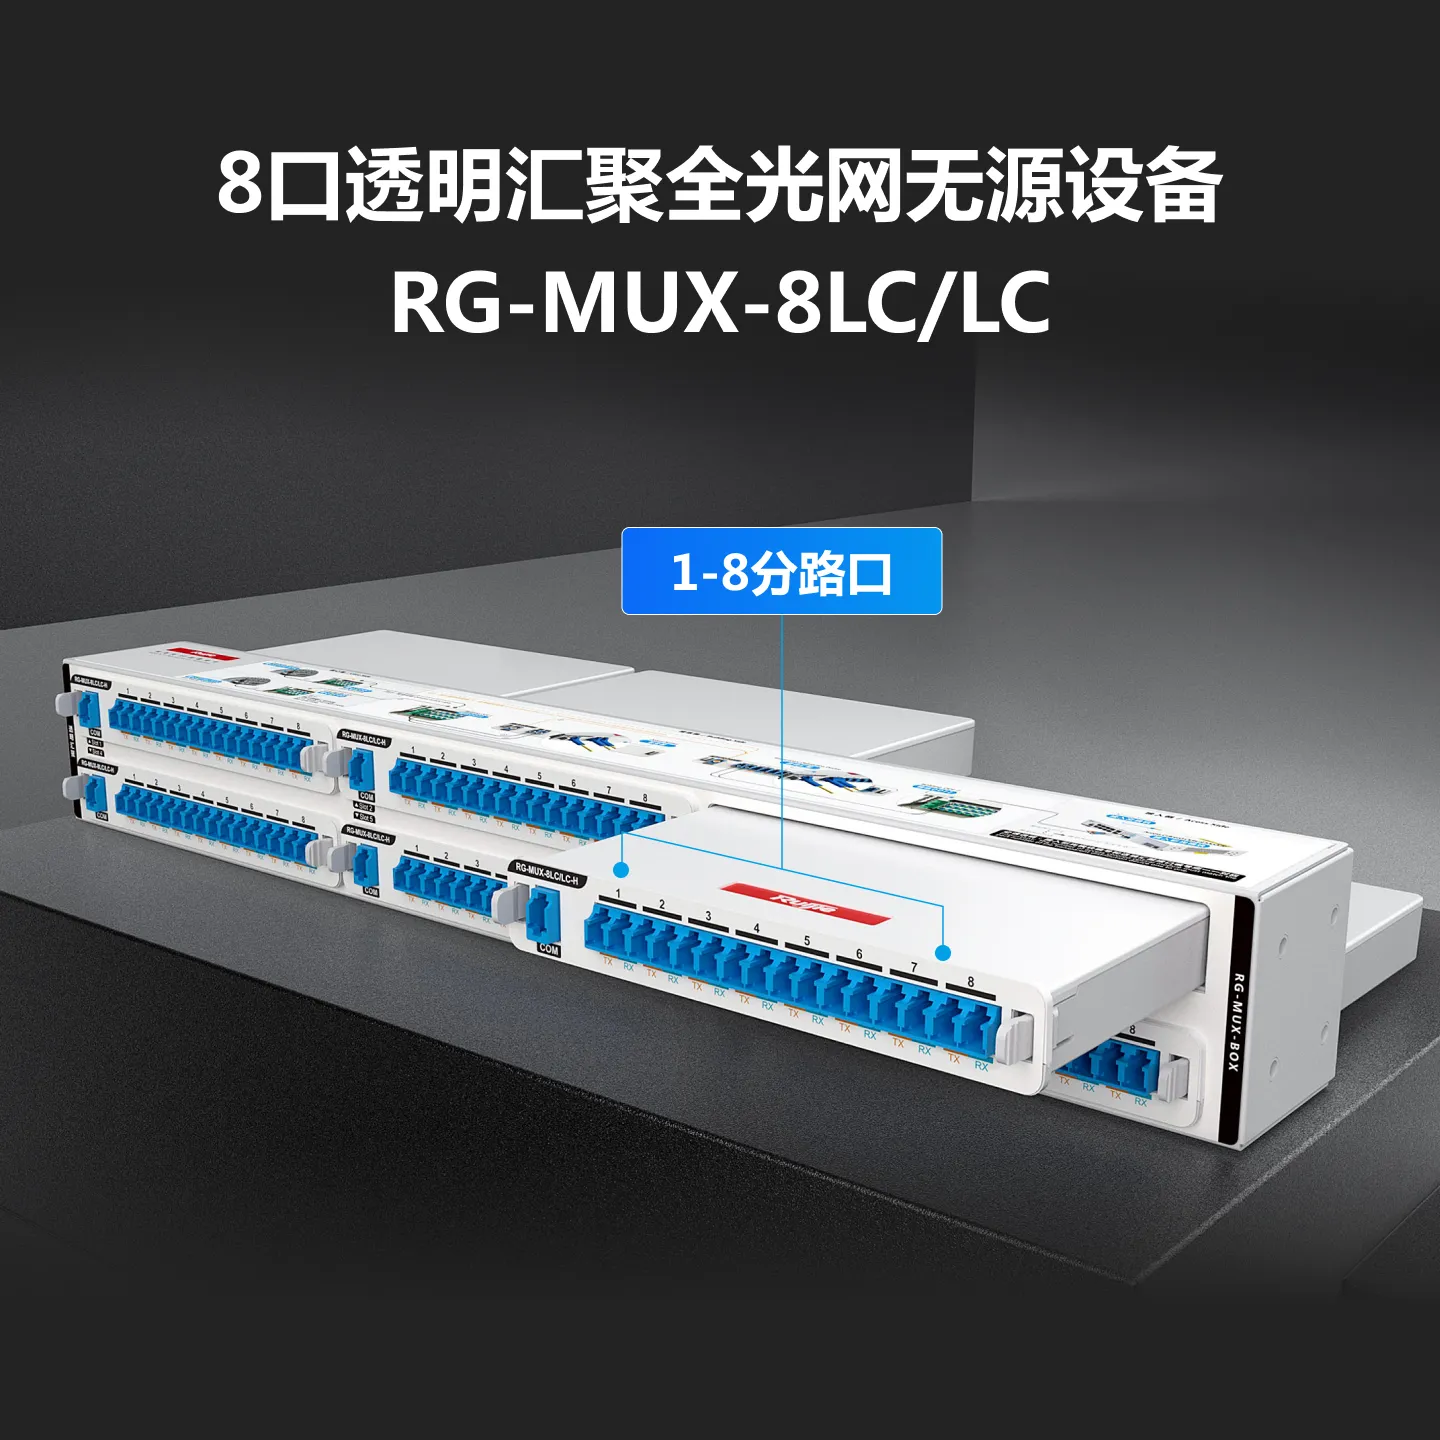 RG-MUX-8LC/LC